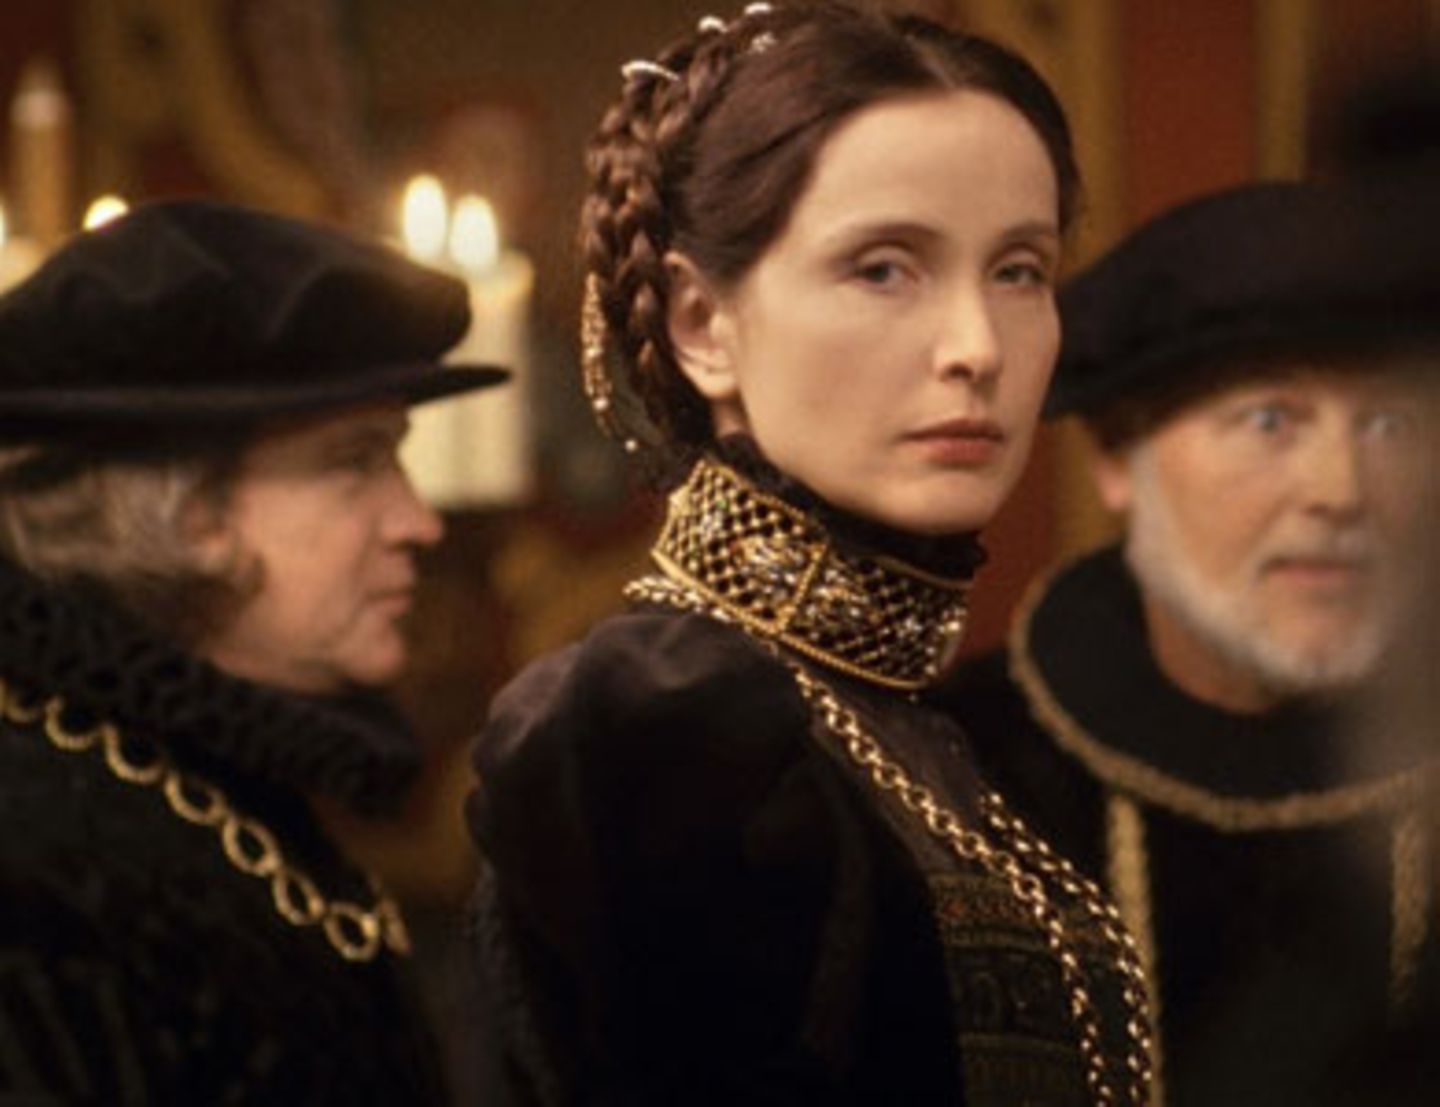 Die Gräfin Erzebet Bathory (Julie Delpy) ist eine mächtige Frau in der männderdominierten Welt des 17. Jahrhunderts.